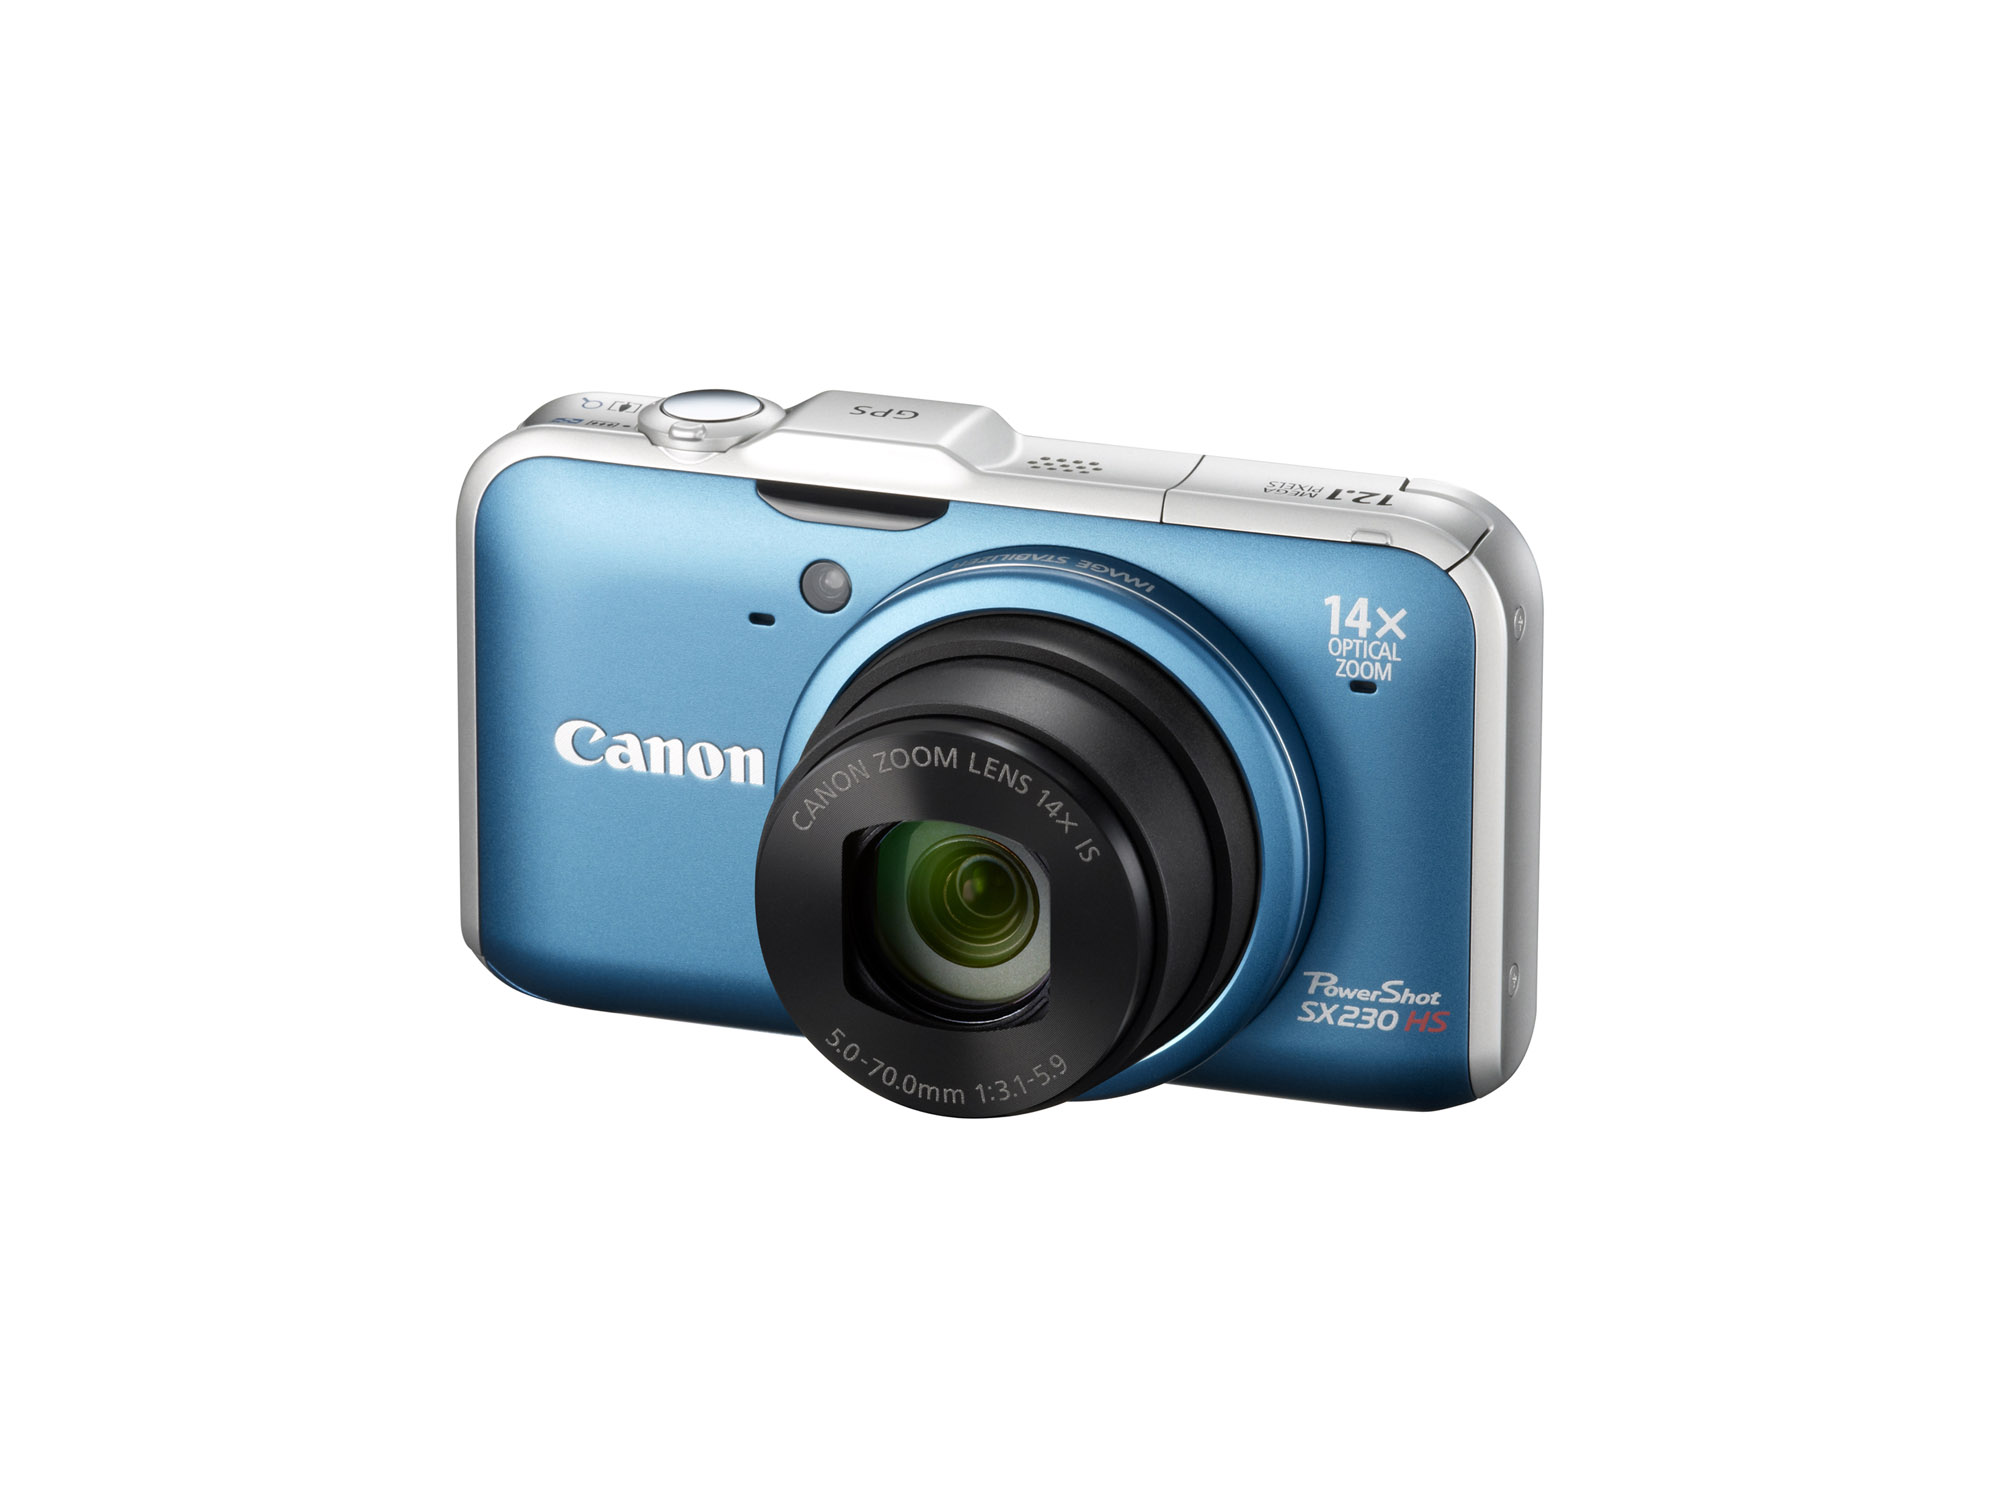 Canon intros PowerShot SX230 HS, ELPH 500 HS, ELPH 300 HS and ELPH 100